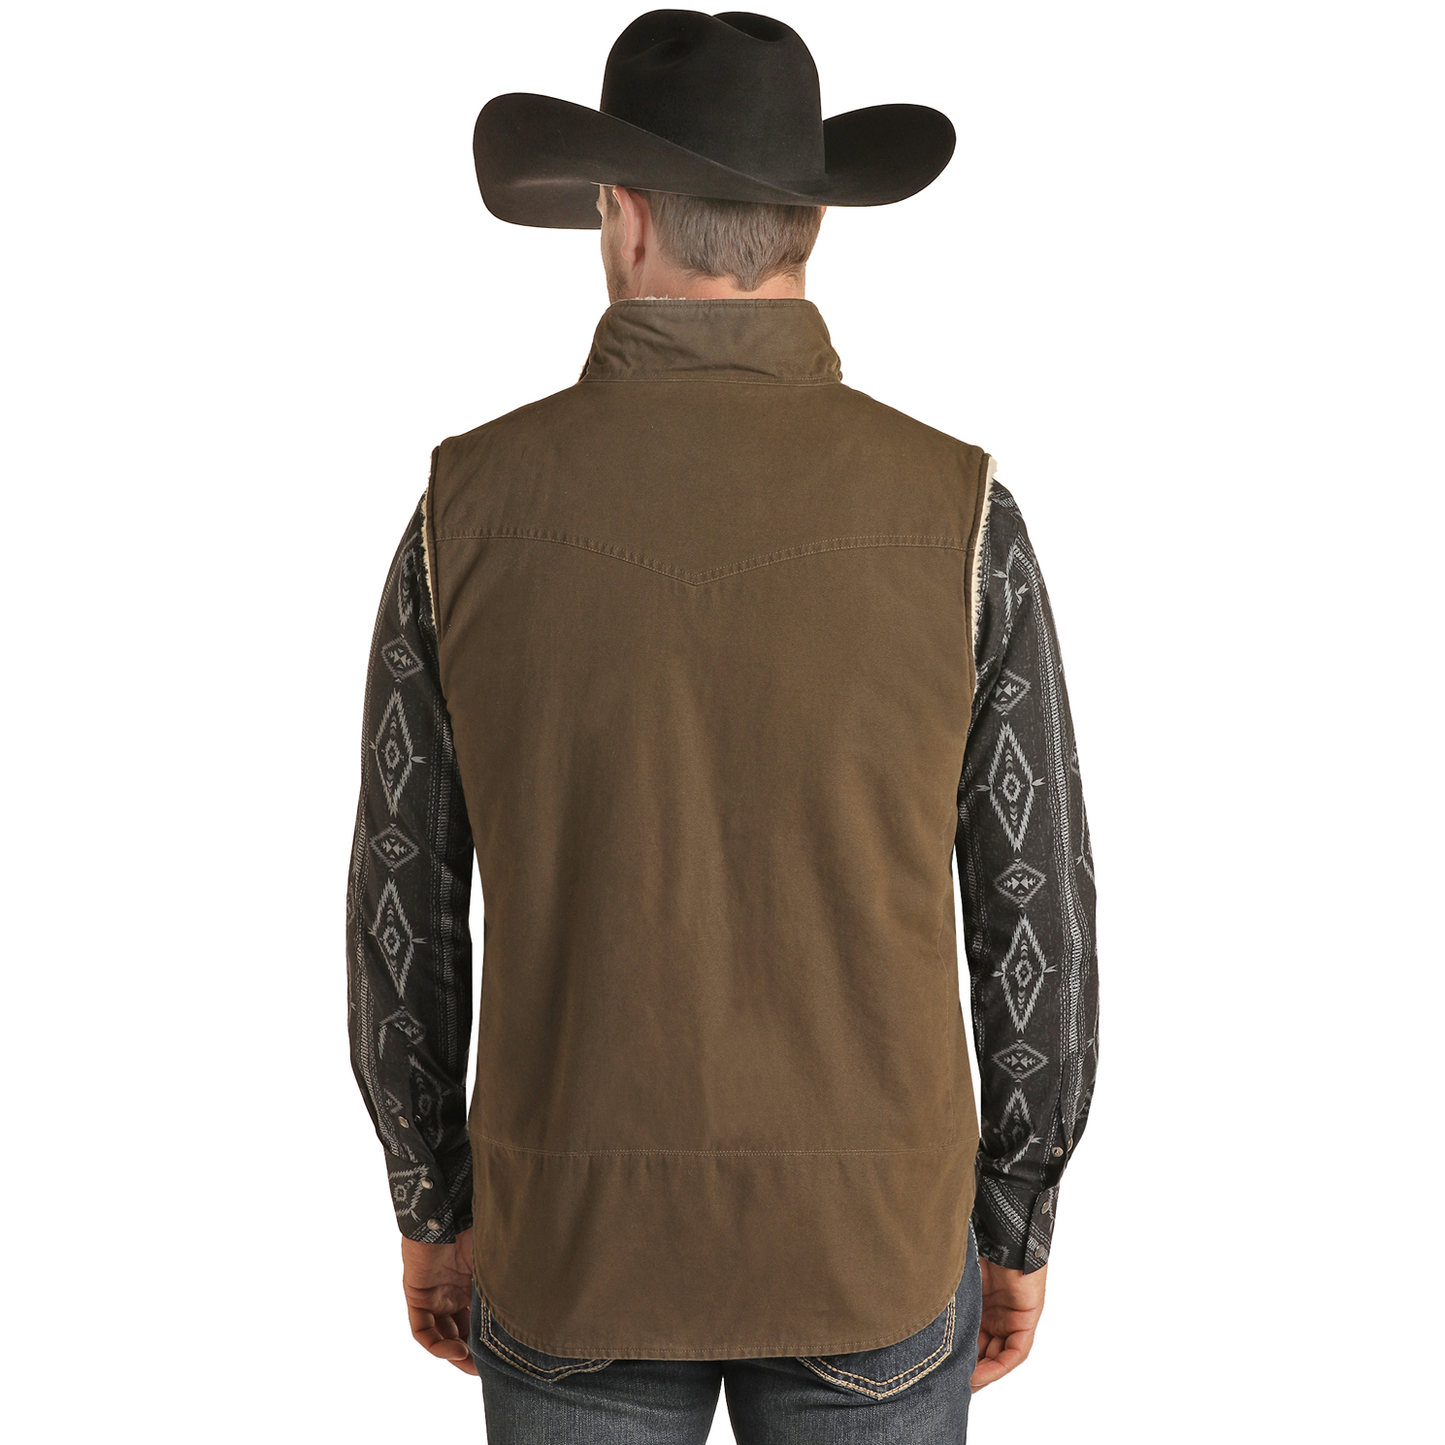 Powder River Outfitters® Men's Cotton Canvas Tan Vest PRMO98RZYS-27